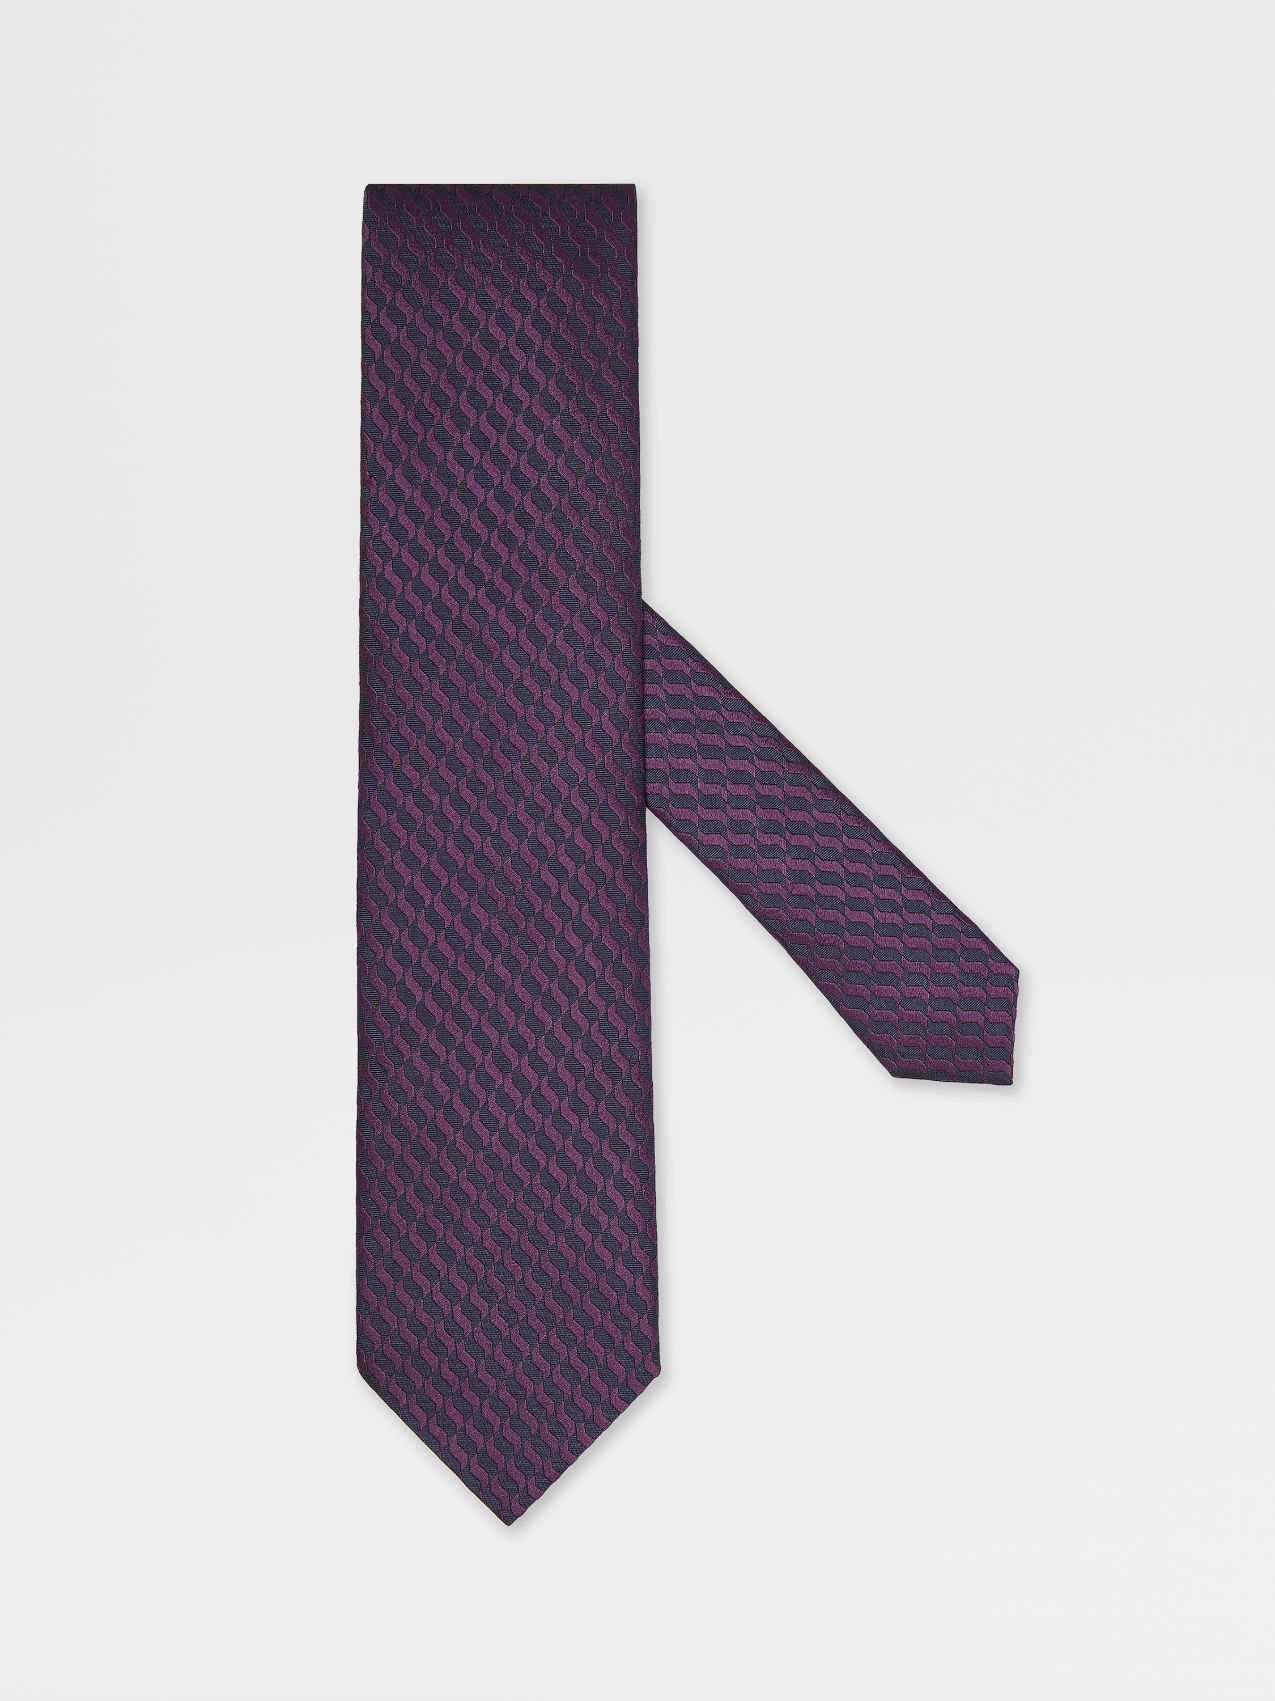 紫罗兰色桑蚕丝 Macroarmature 领带